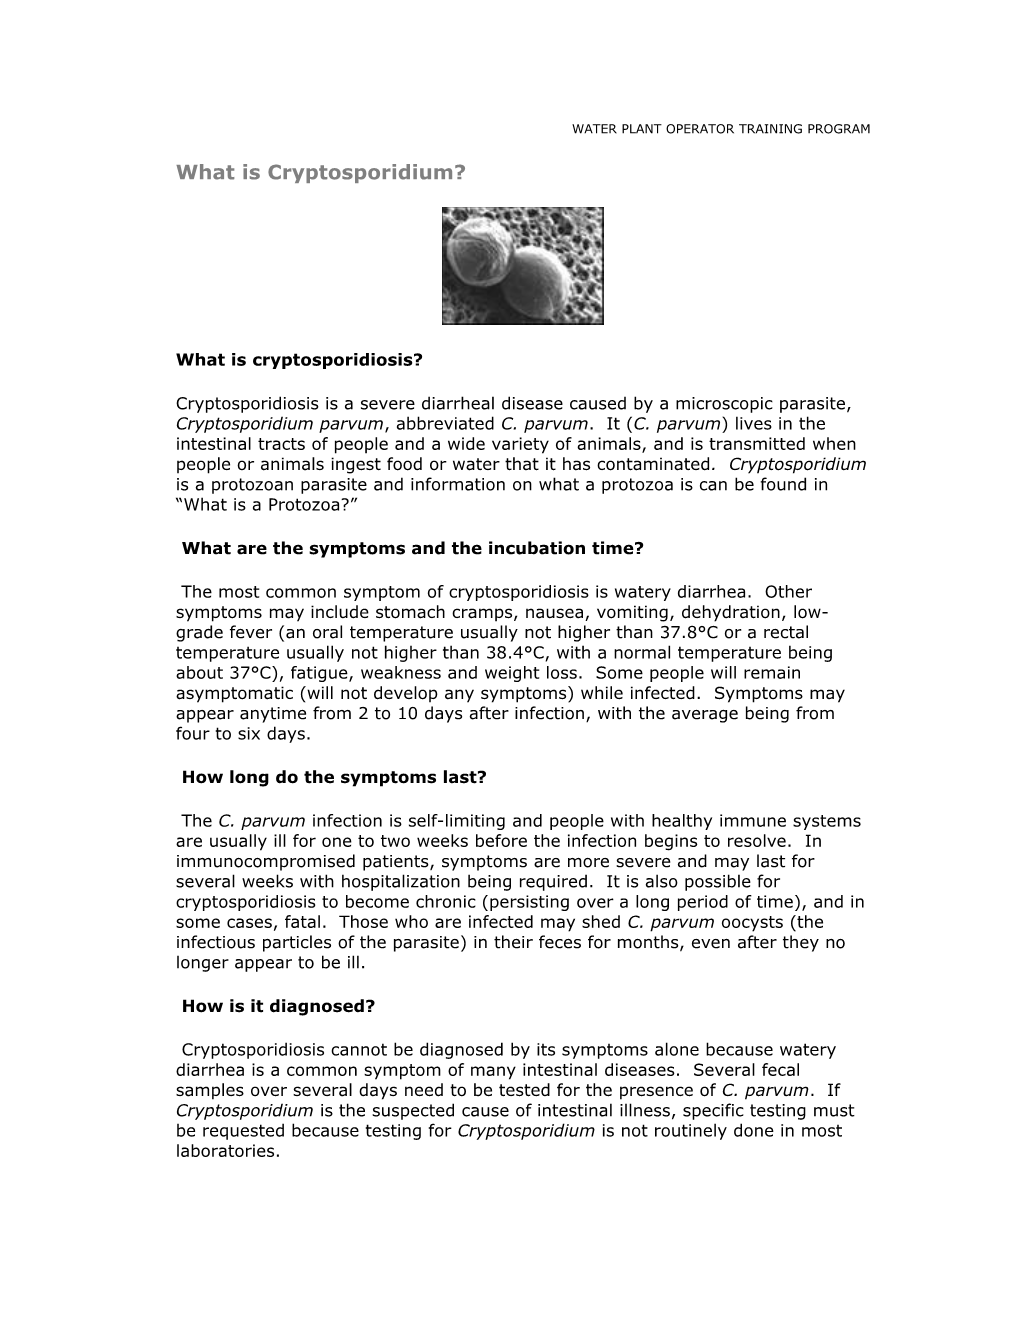 What Is Cryptosporidium